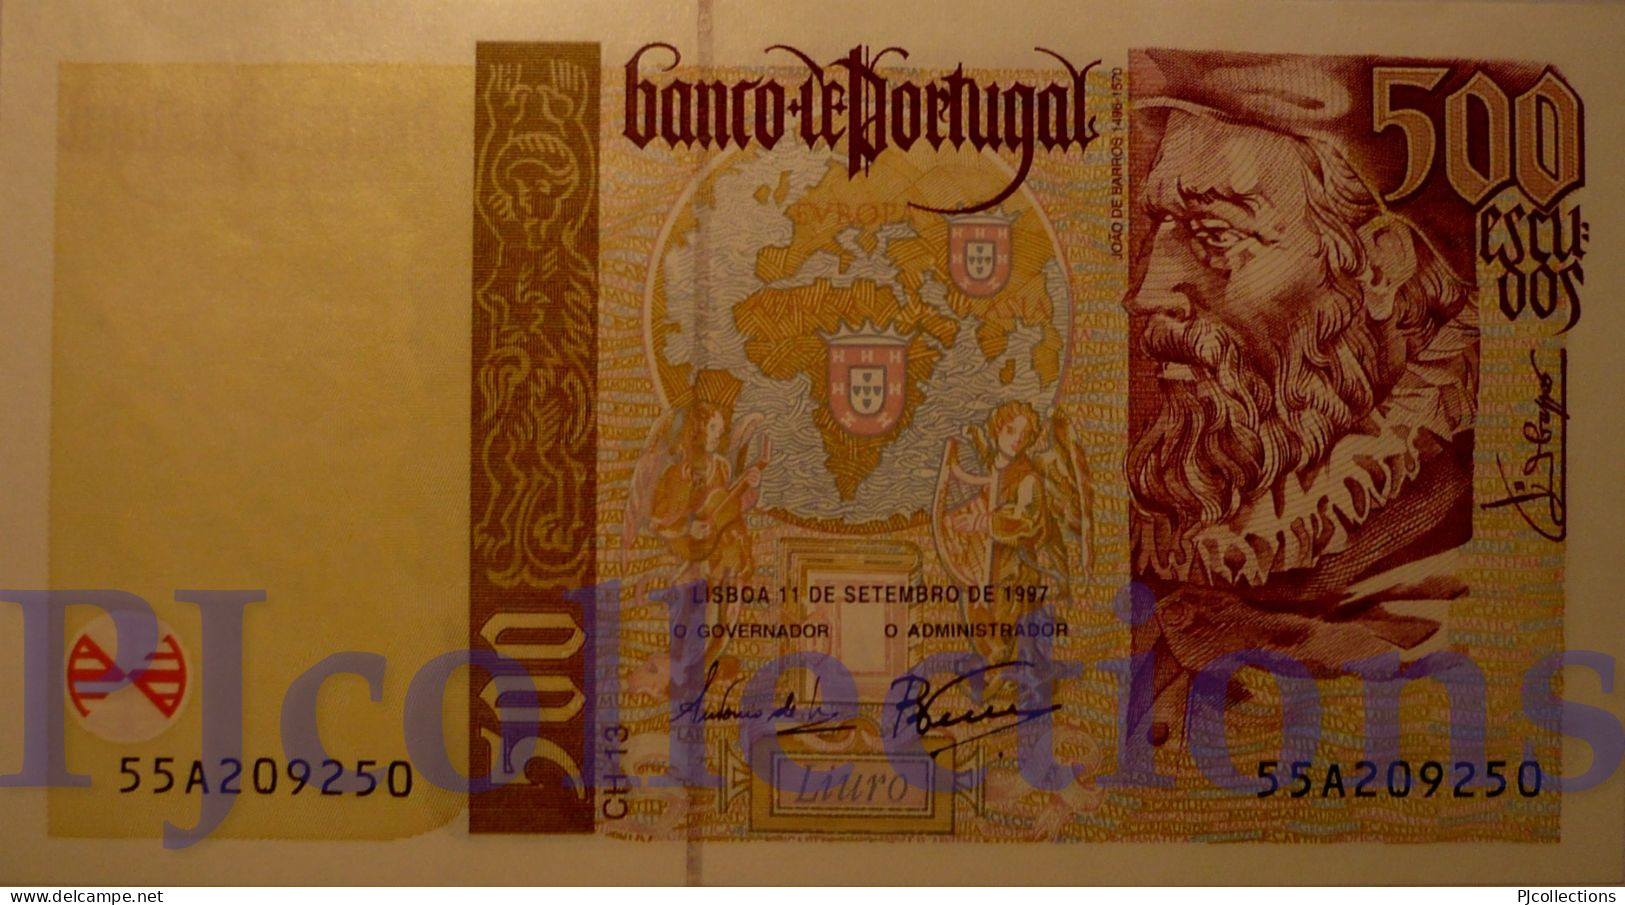 PORTOGALLO - PORTUGAL 500 ESCUDOS 1997 PICK 187b UNC - Portogallo